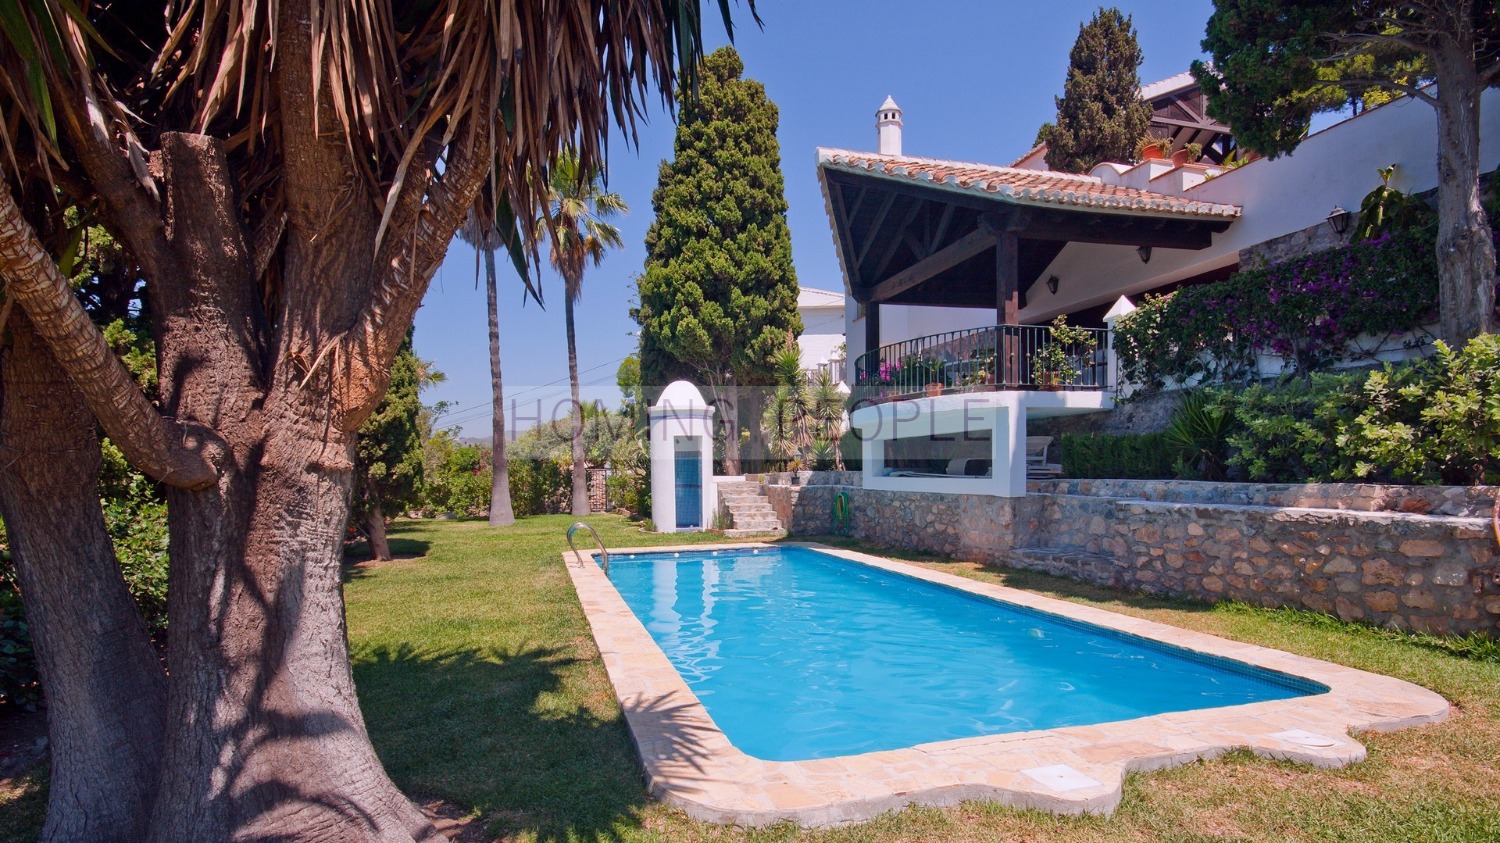 Chalet inmaculado con fantásticos jardines, piscina y casita de invitados.